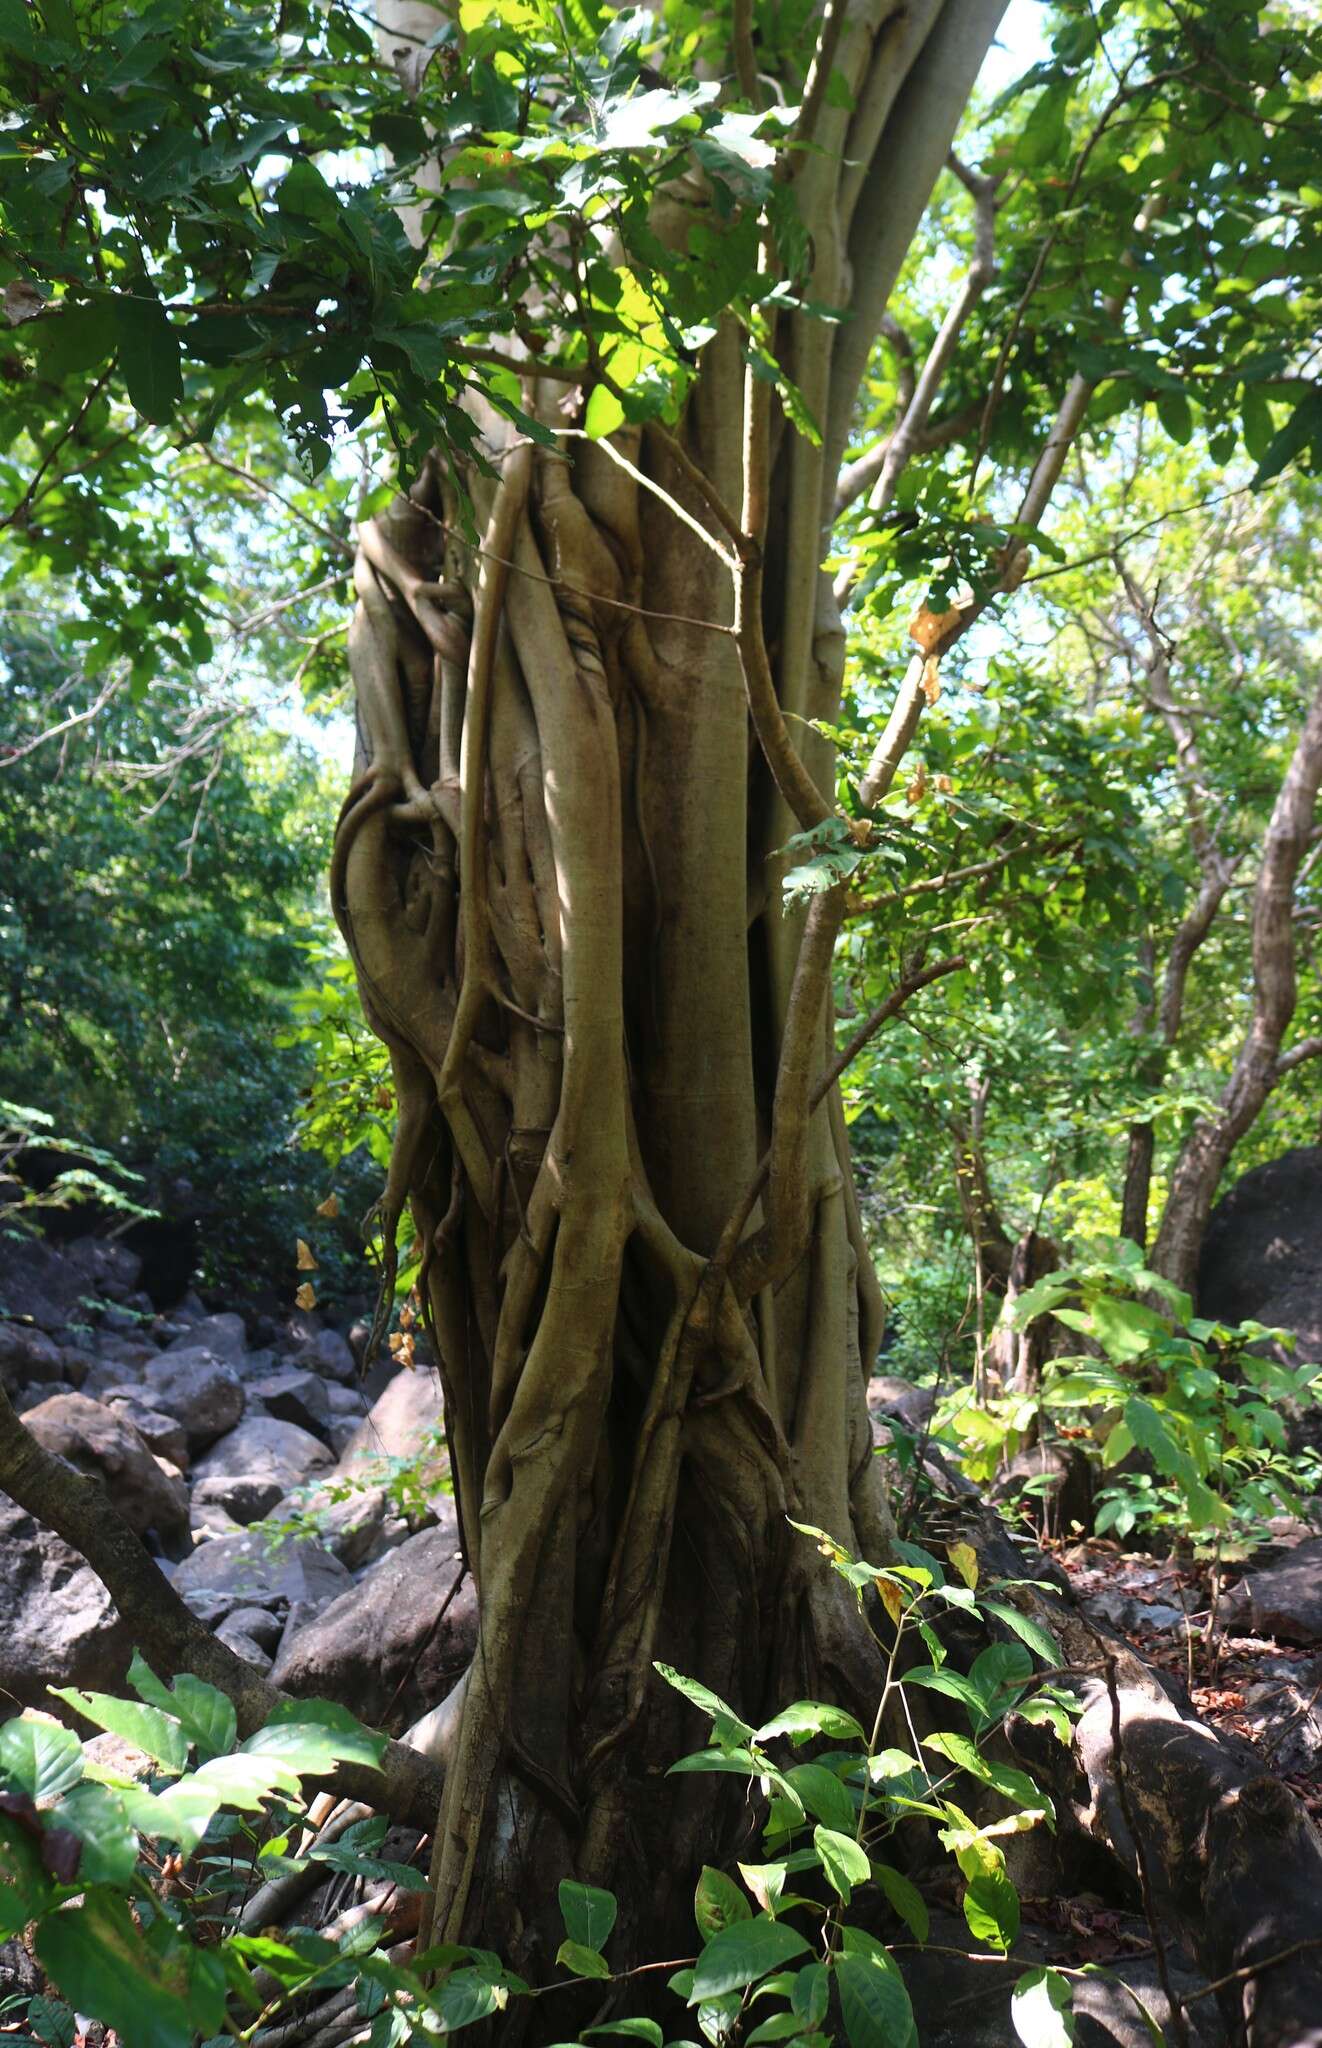 Image of Ficus talbotii King